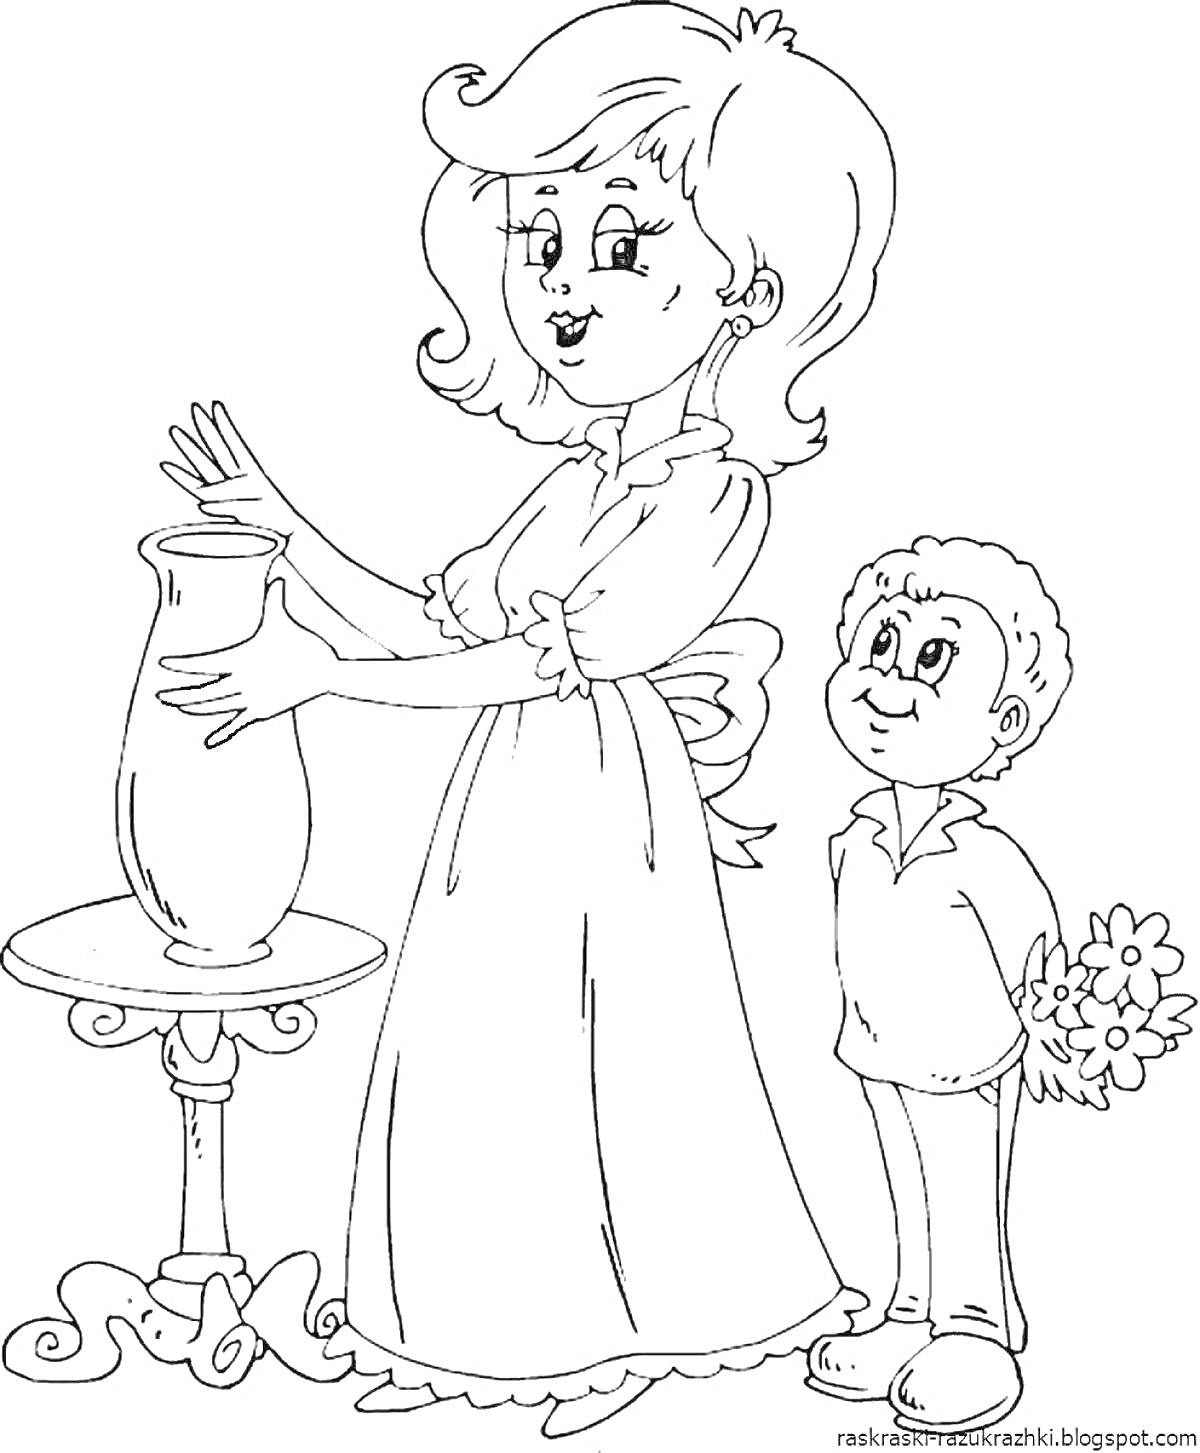 Раскраска Мама ставит вазу на стол, маленький мальчик с букетом цветов